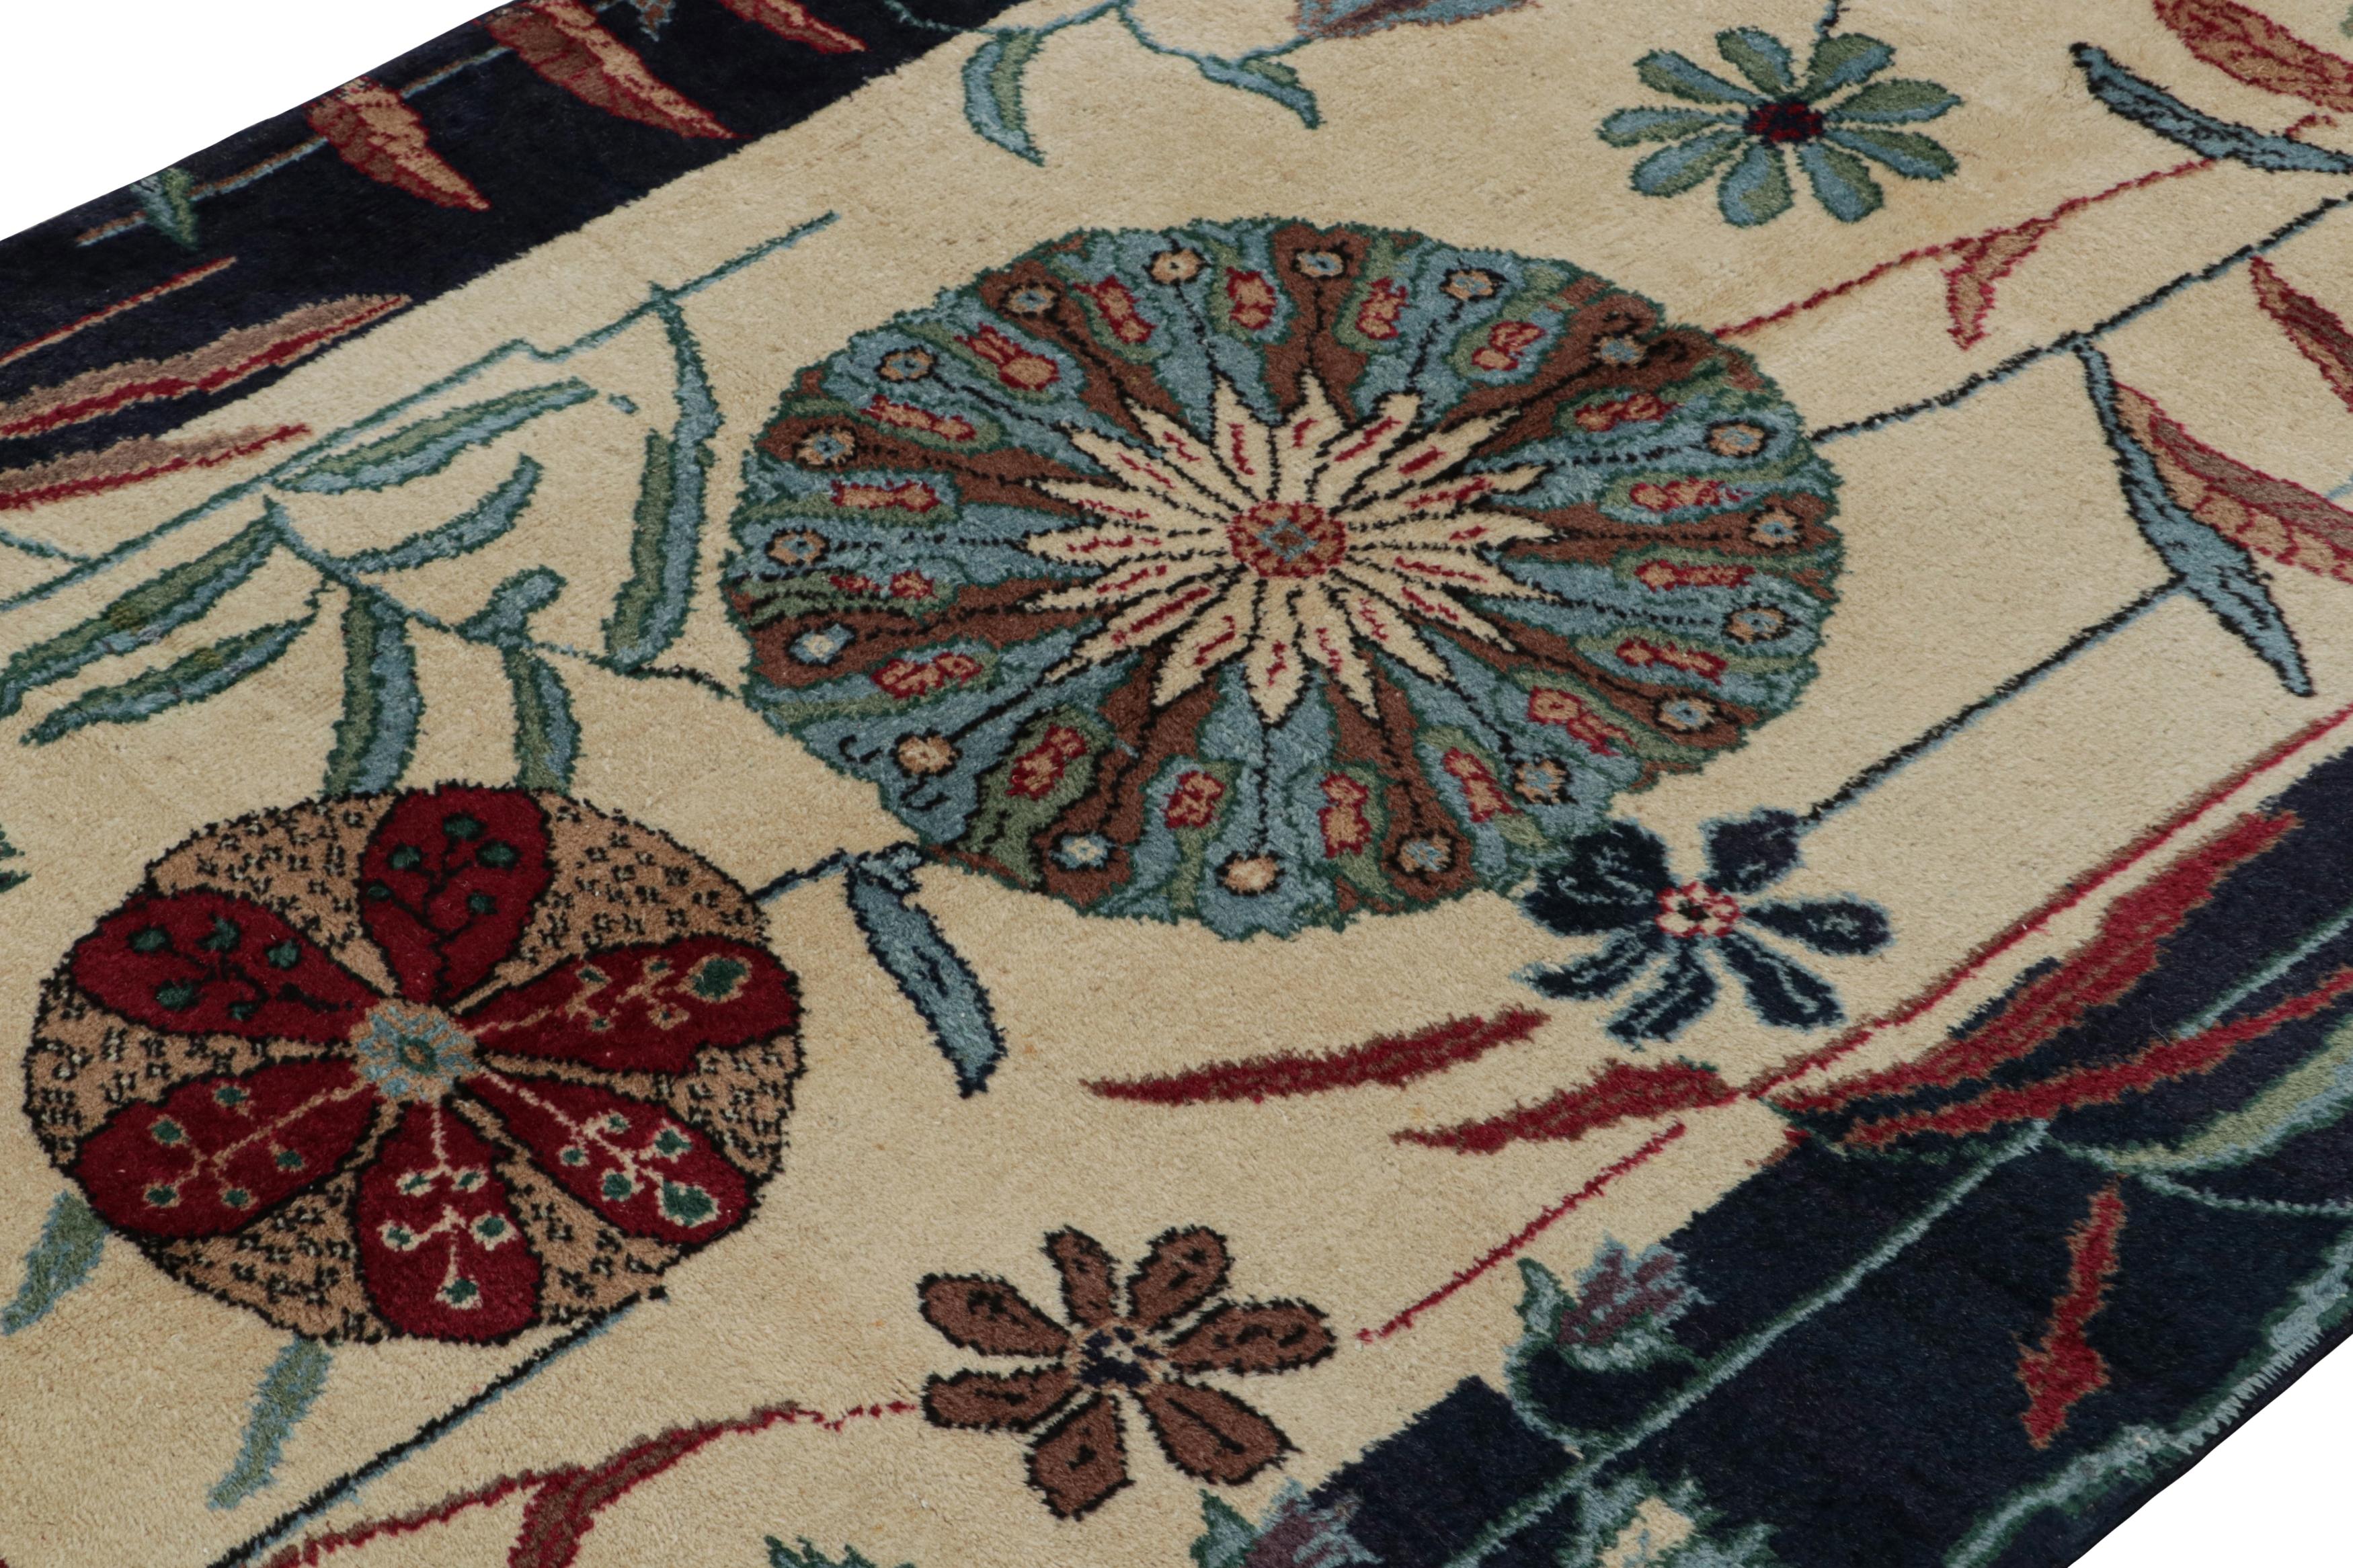 Hand-Knotted Vintage Zeki Müren Art Deco Rug, with Floral Patterns, from Rug & Kilim For Sale